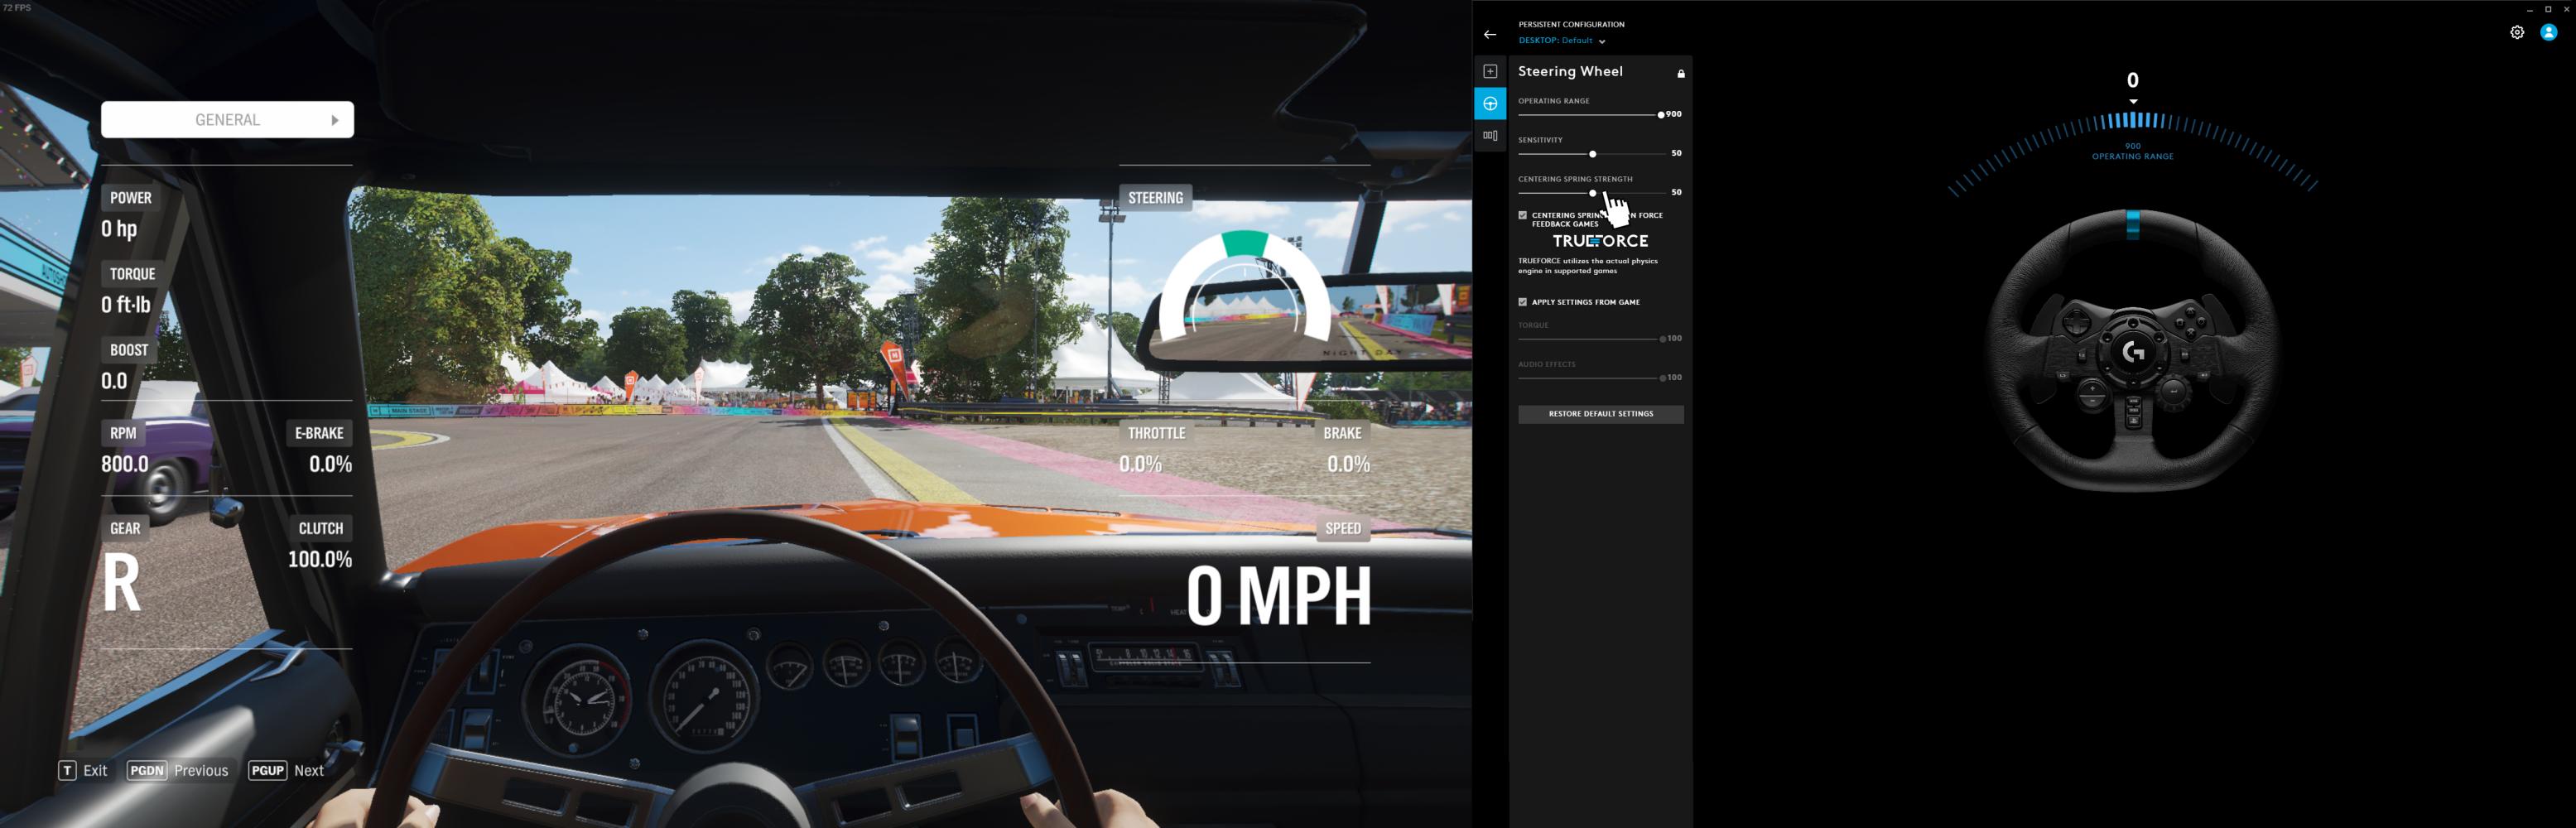 Forza Horizon 4 - Racing Wheel & Logitech G-Hub Fix